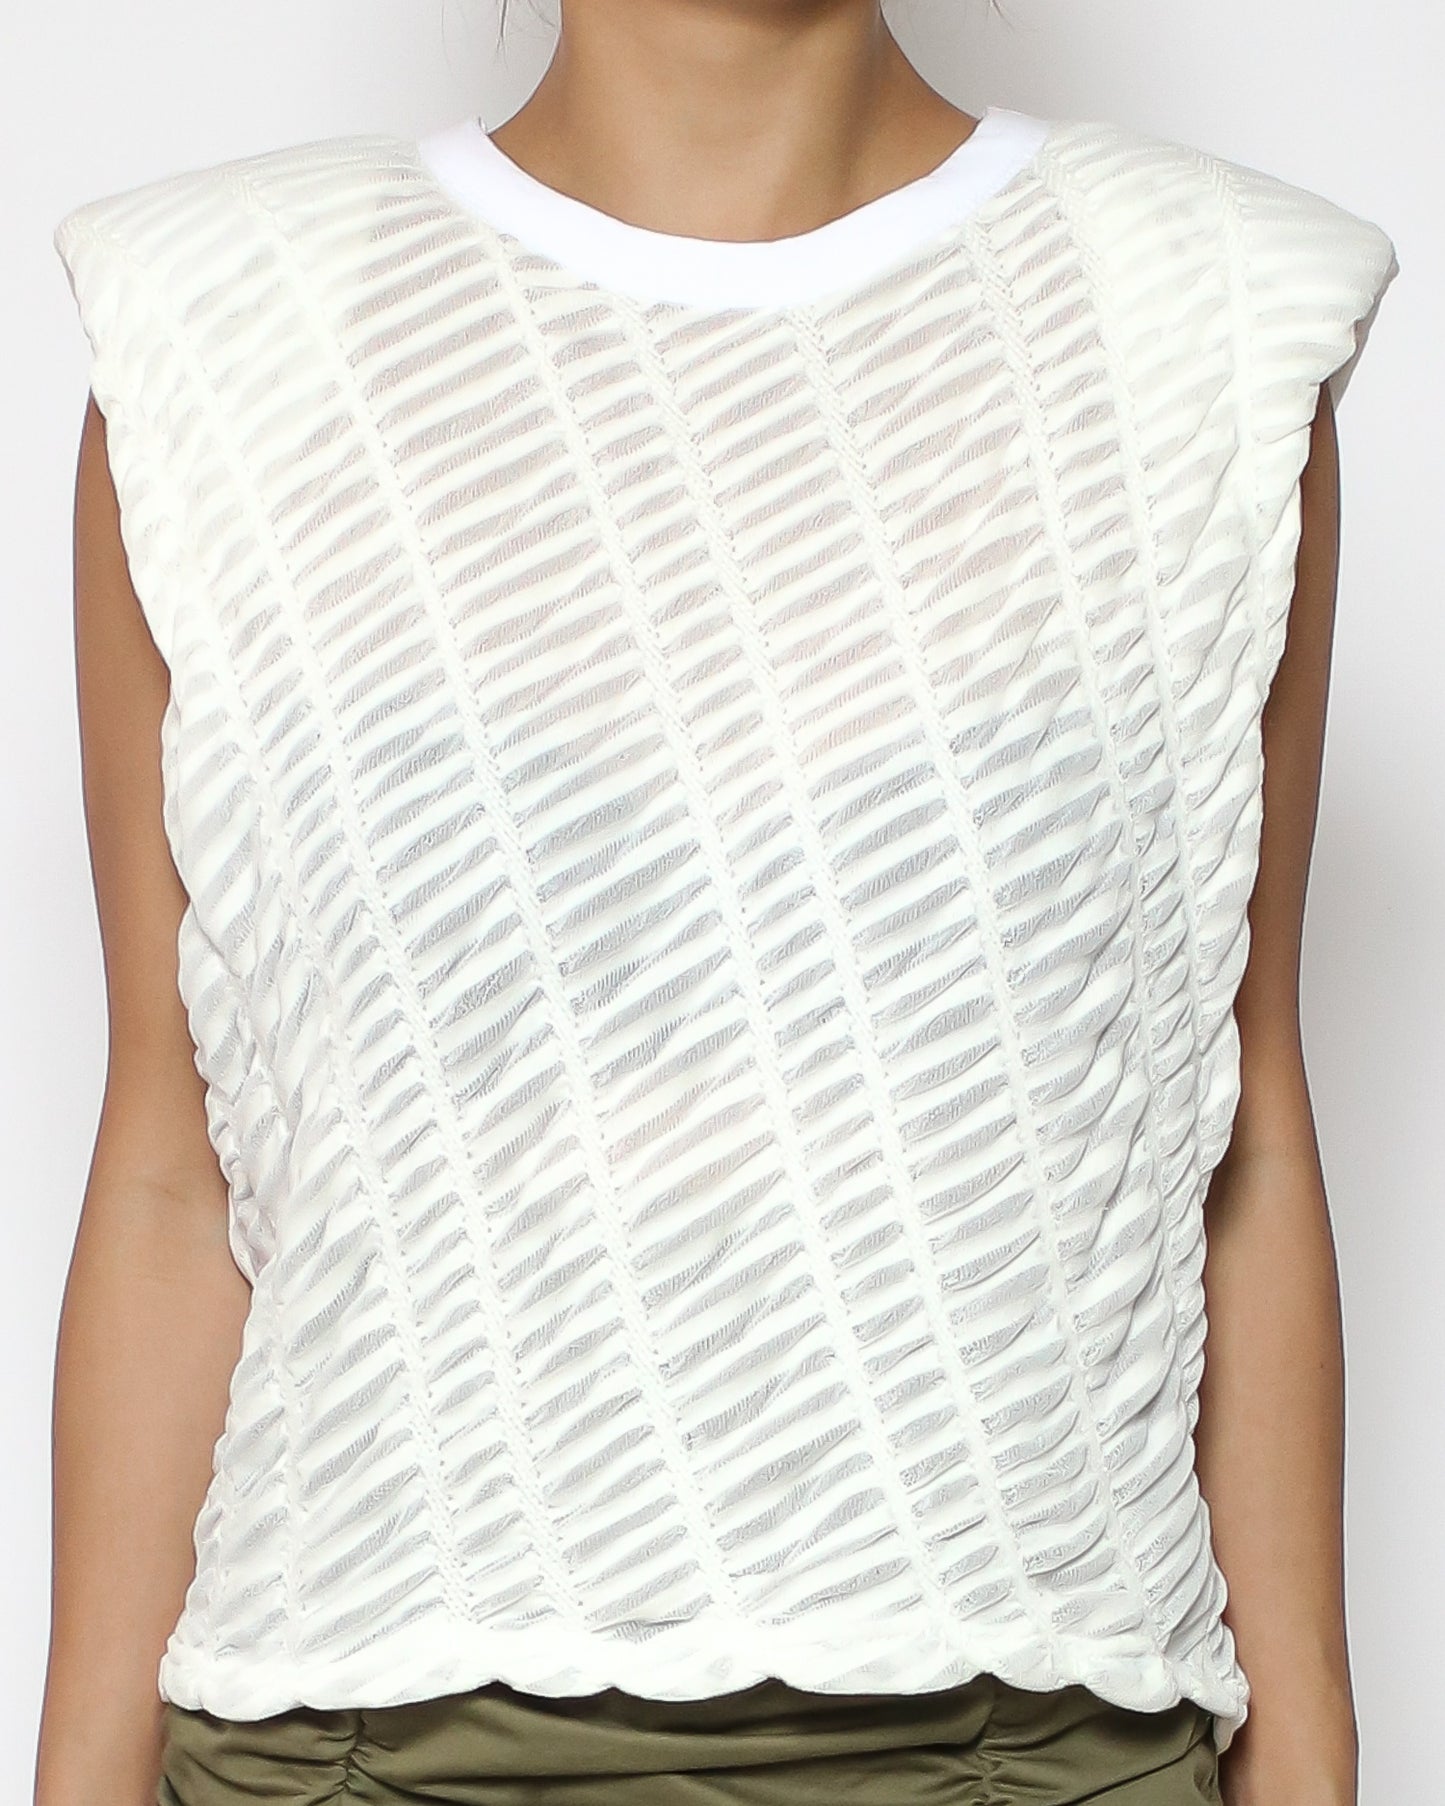 Ivory texture shoulders pad vest